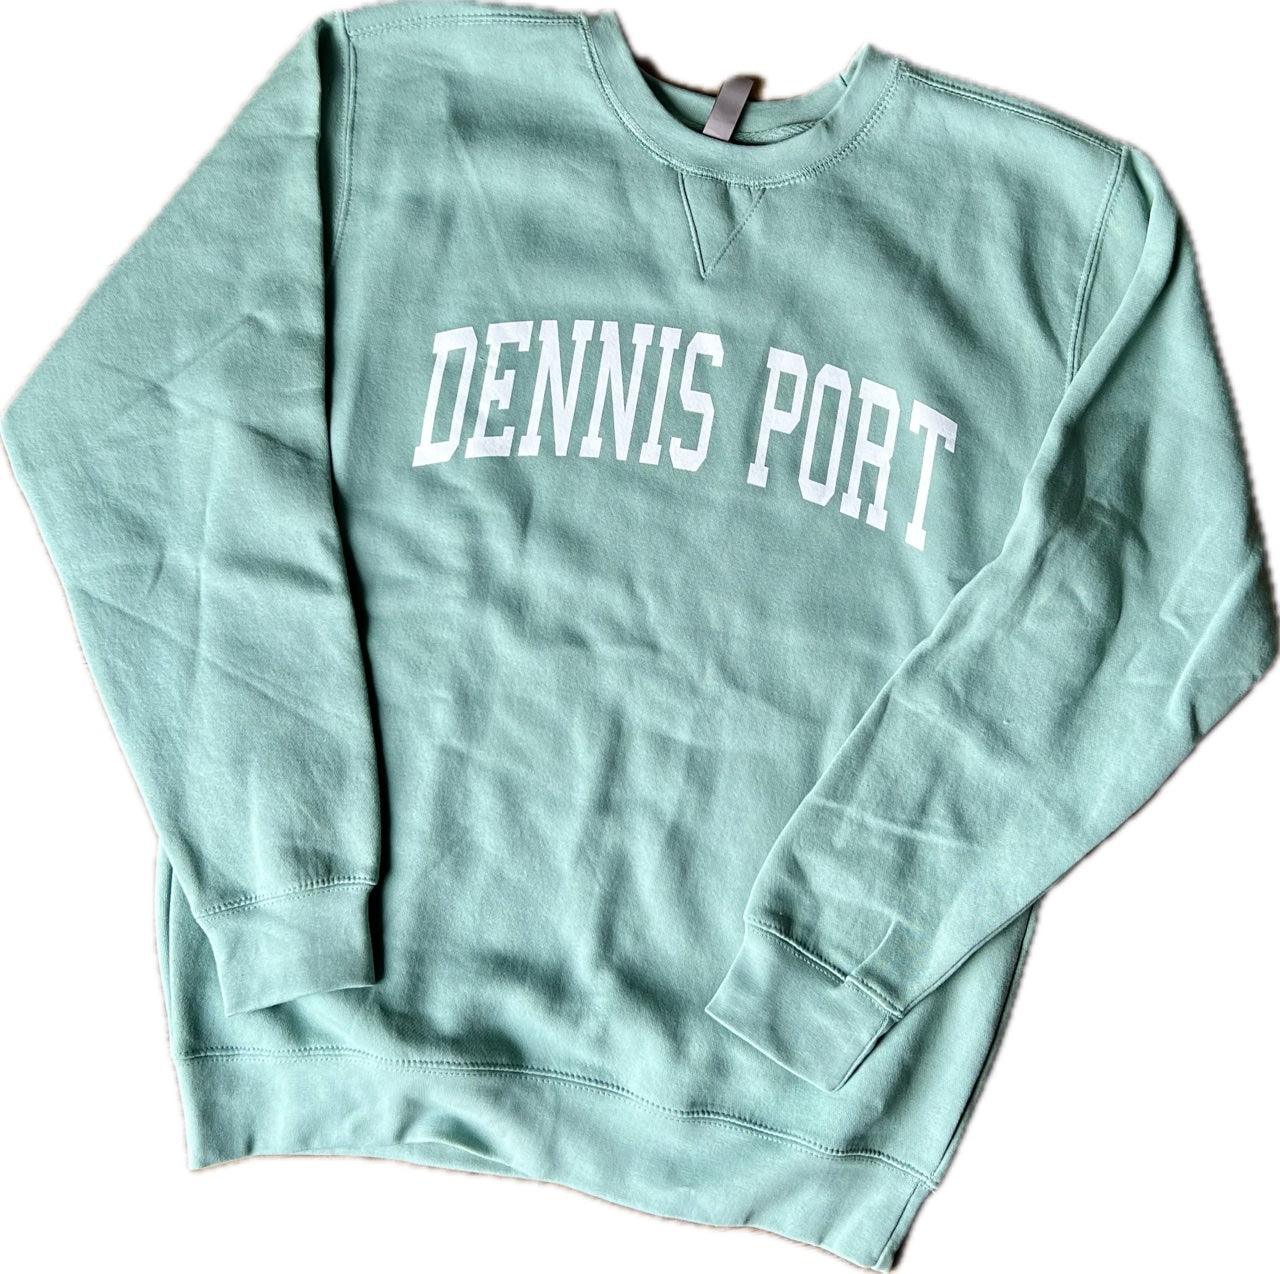 Sage Green Dennis Port Crewneck Sweatshirt